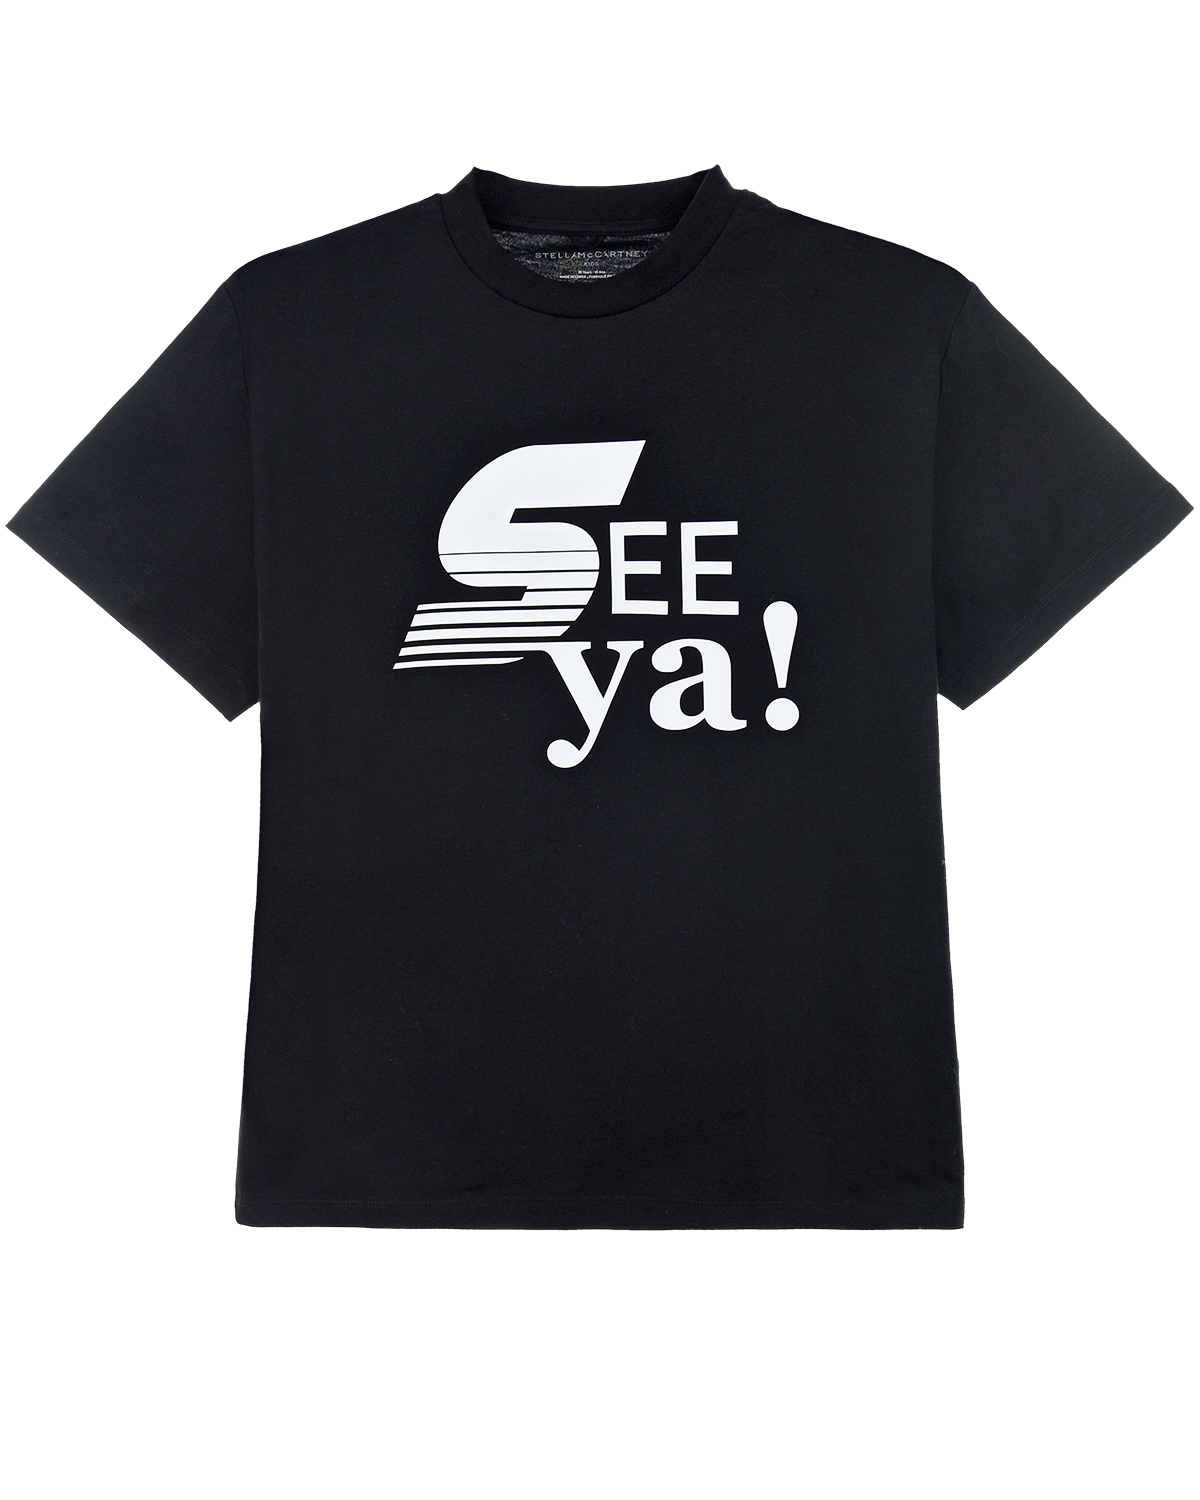 Купить Черная футболка с принтом See ya! Stella McCartney детская, Черный, 100%хлопок, 92%хлопок+8%эластан